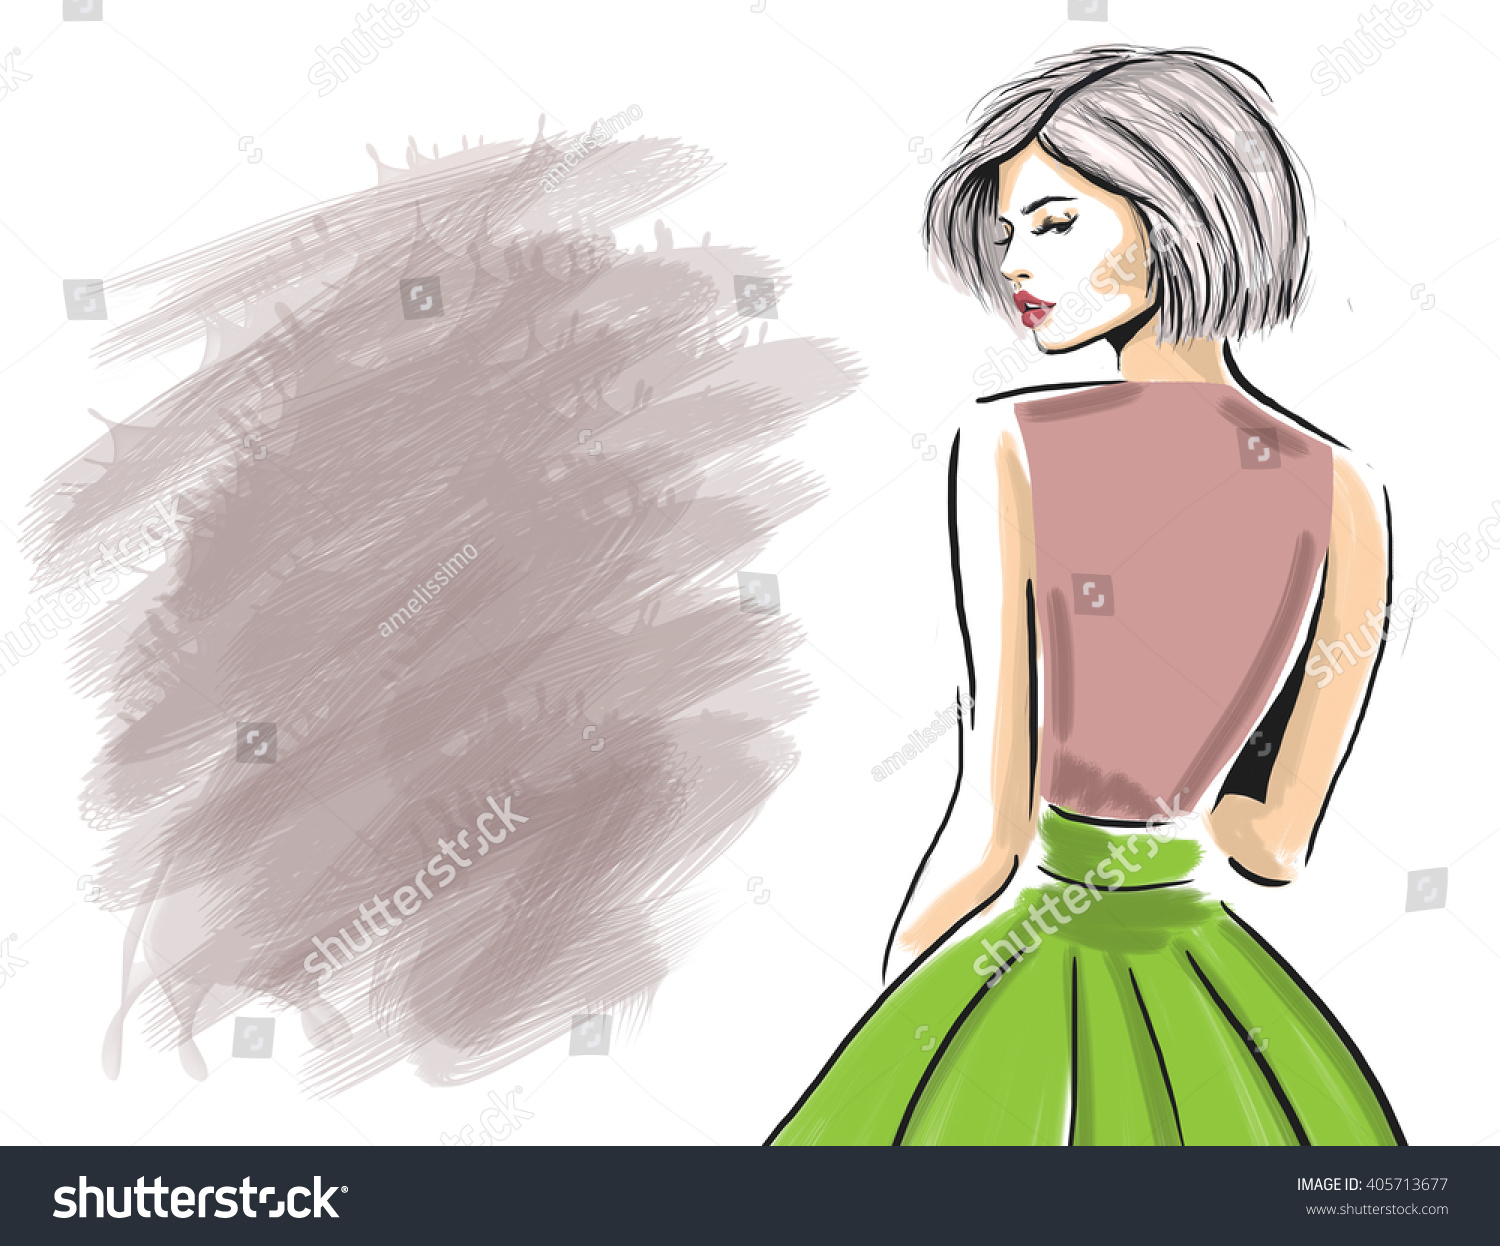 髪 女性 後ろ姿 のイラスト素材 画像 ベクター画像 Shutterstock